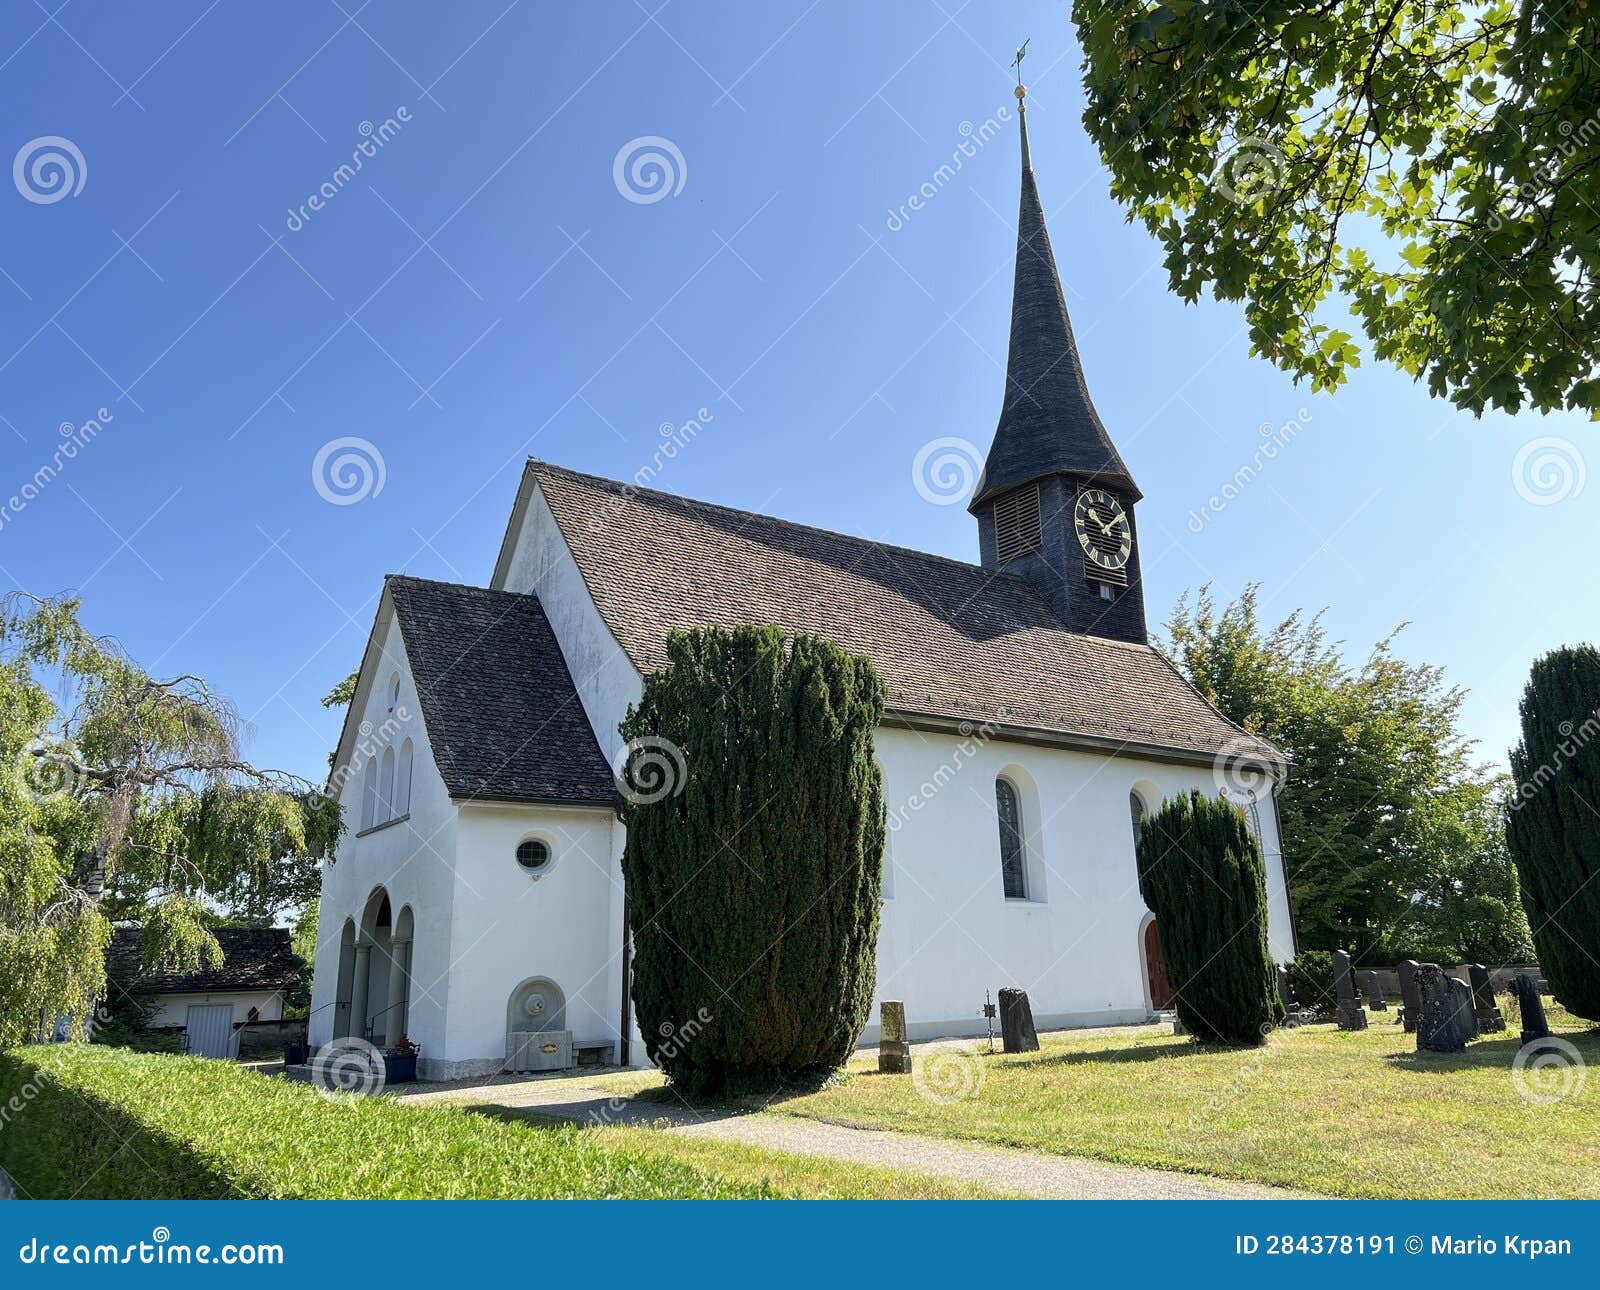 evangelical reformed church in unterdorf or evangelisch-reformierte kirche unterdorf - zurich or zuerich